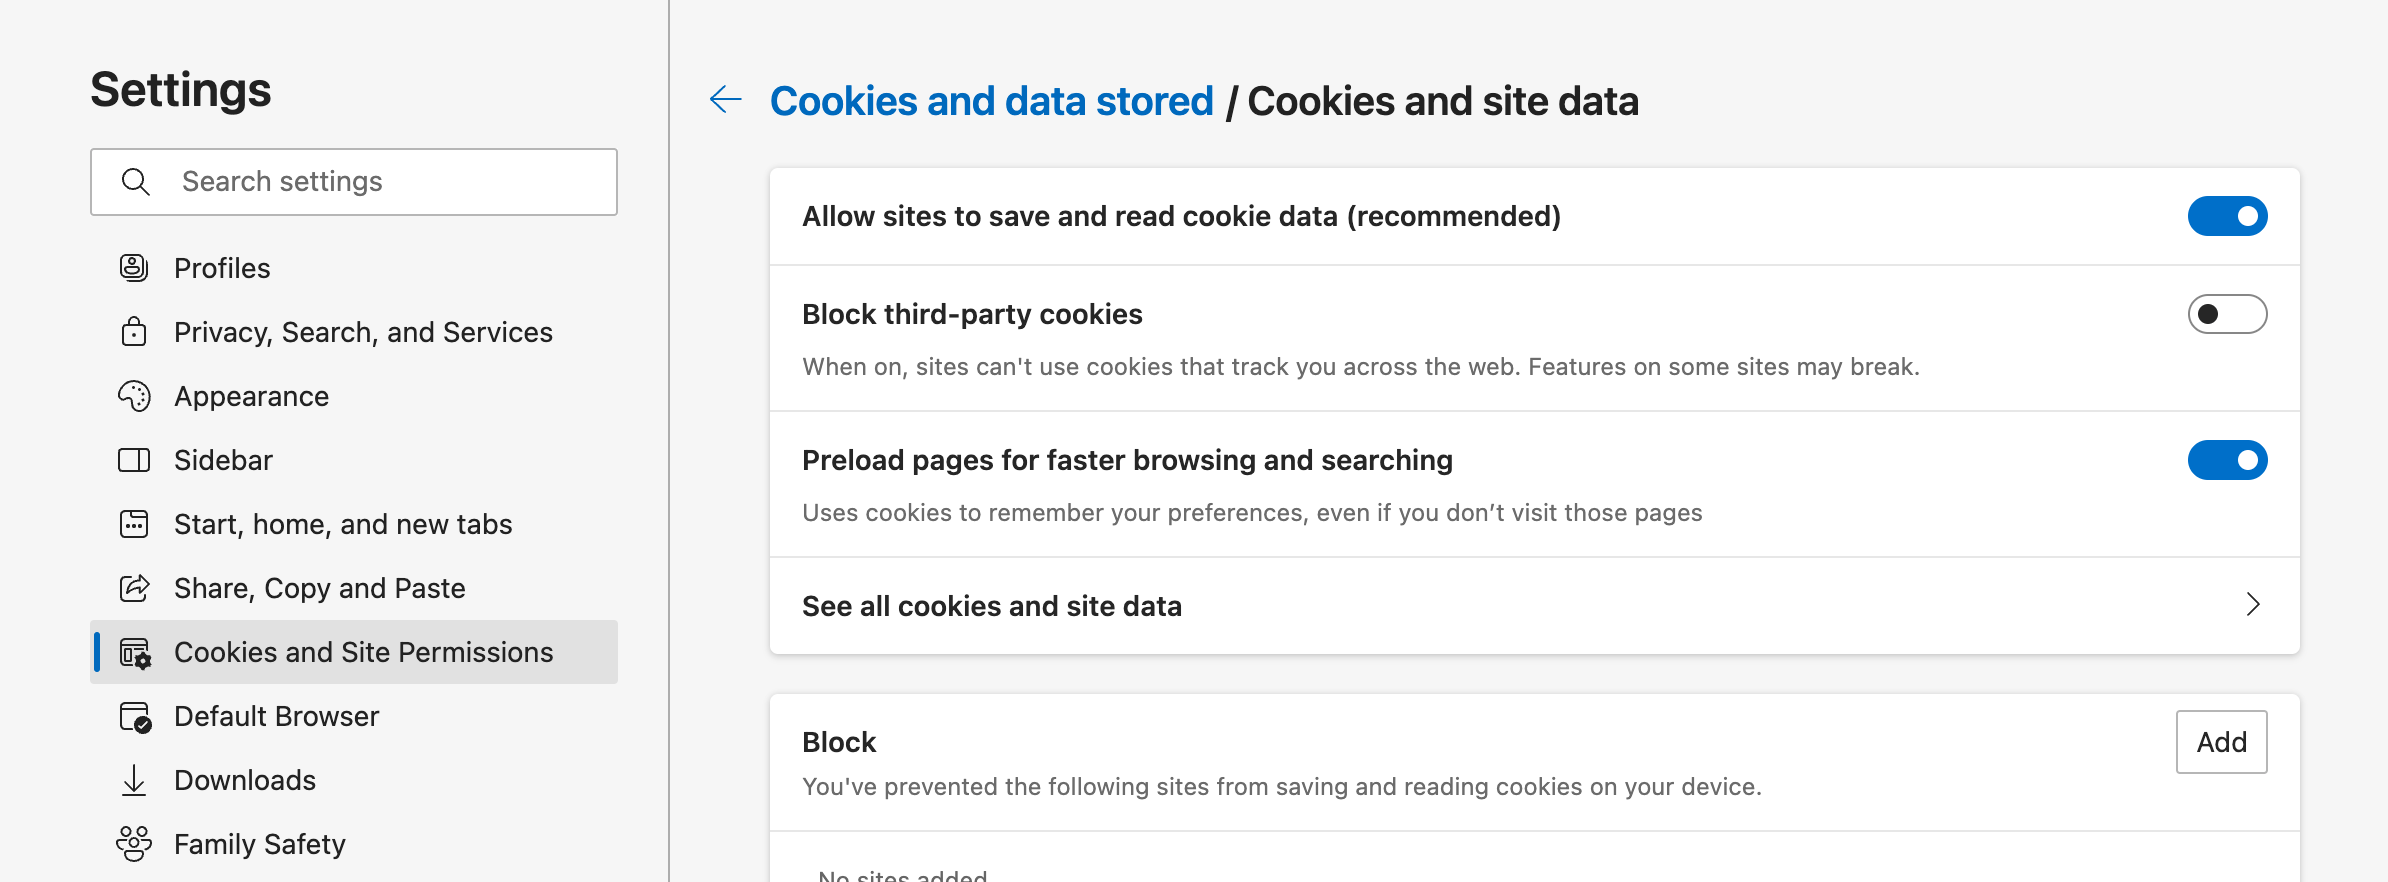 edge-settings-cookies-enable.png